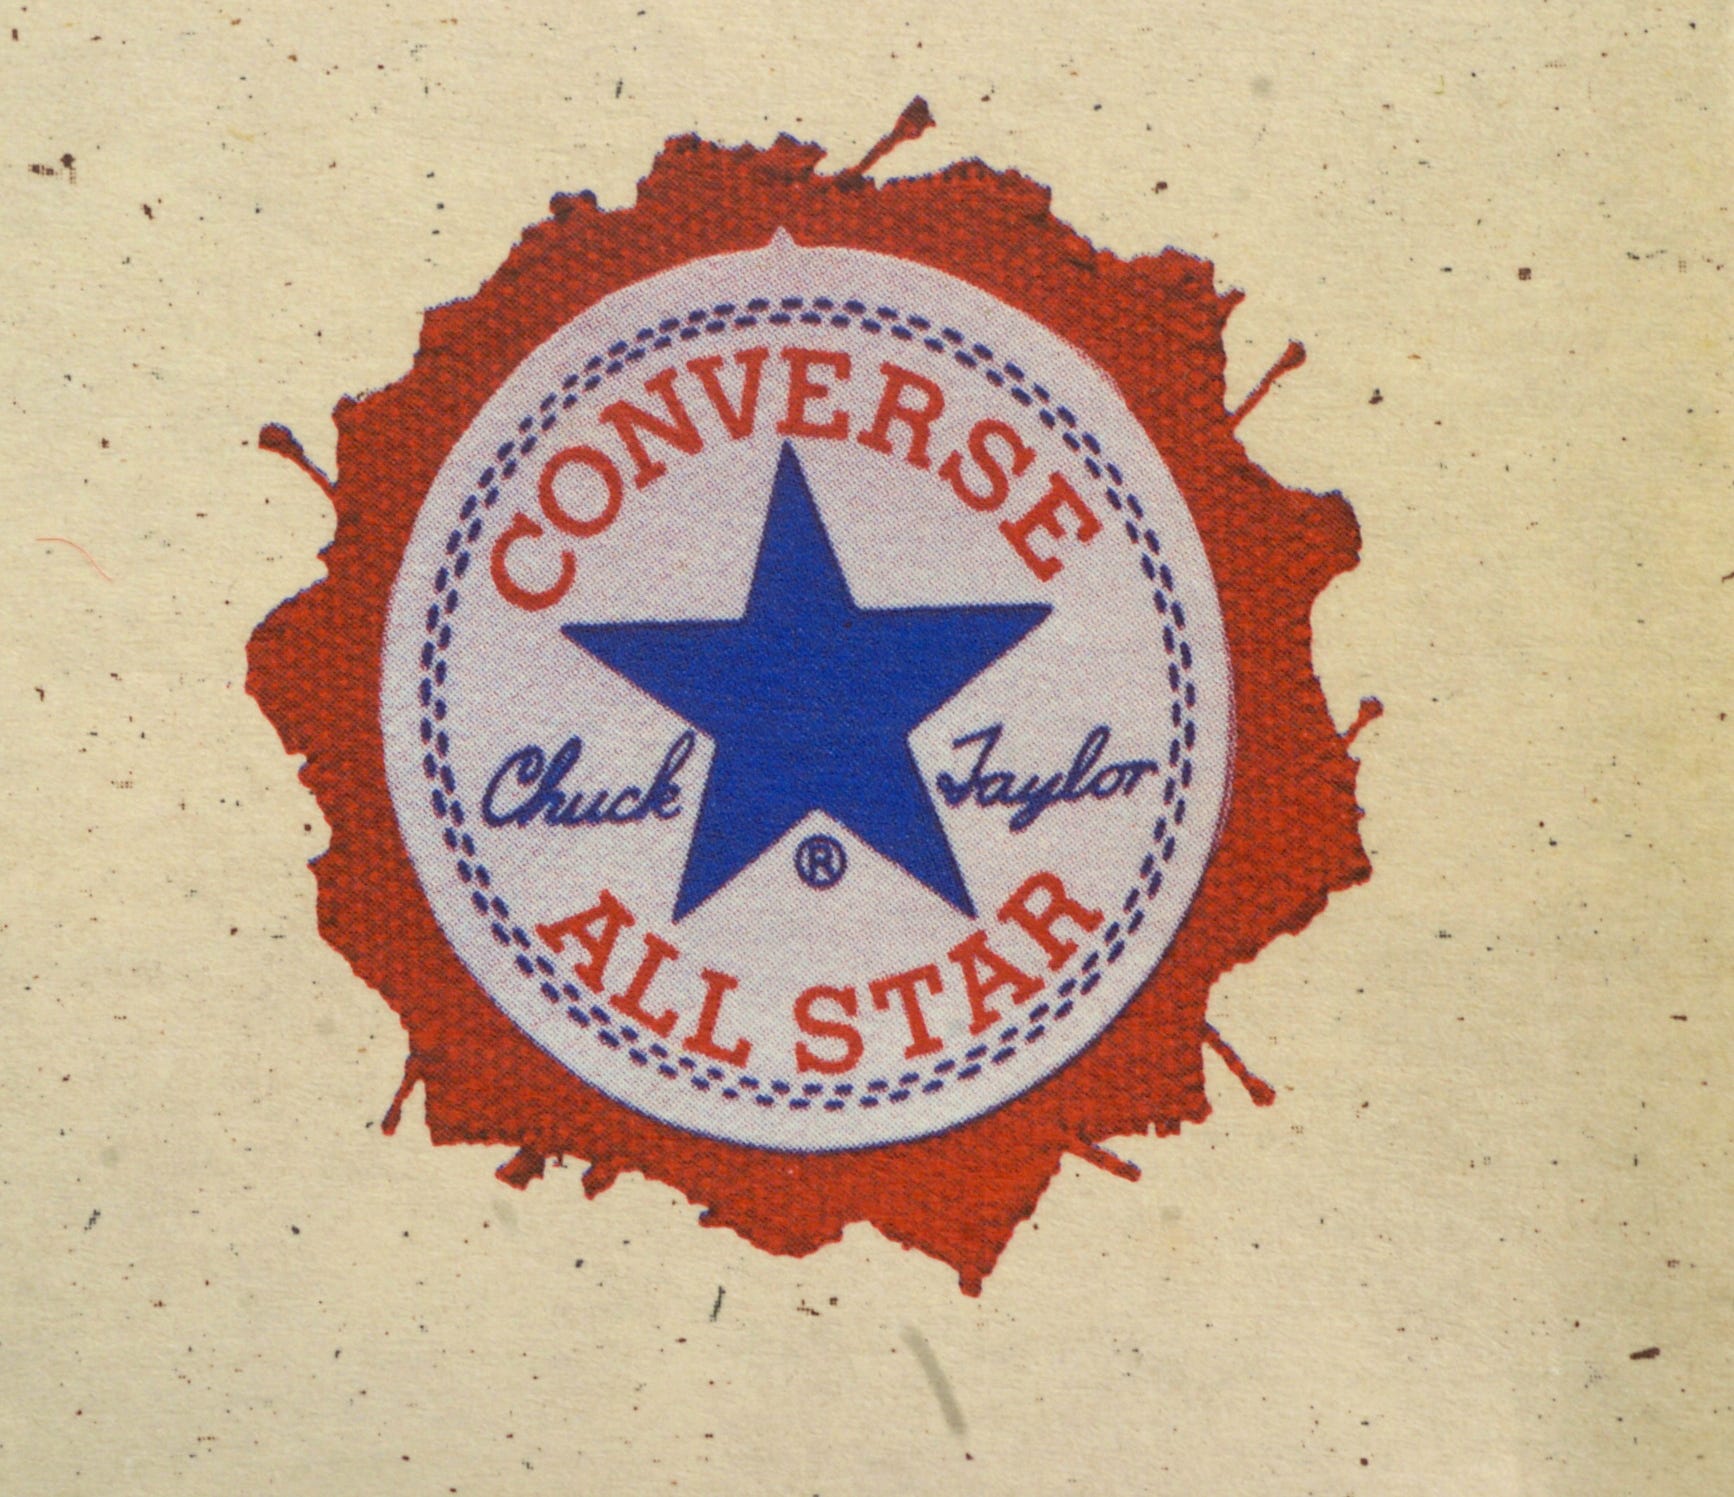 converse logo outside